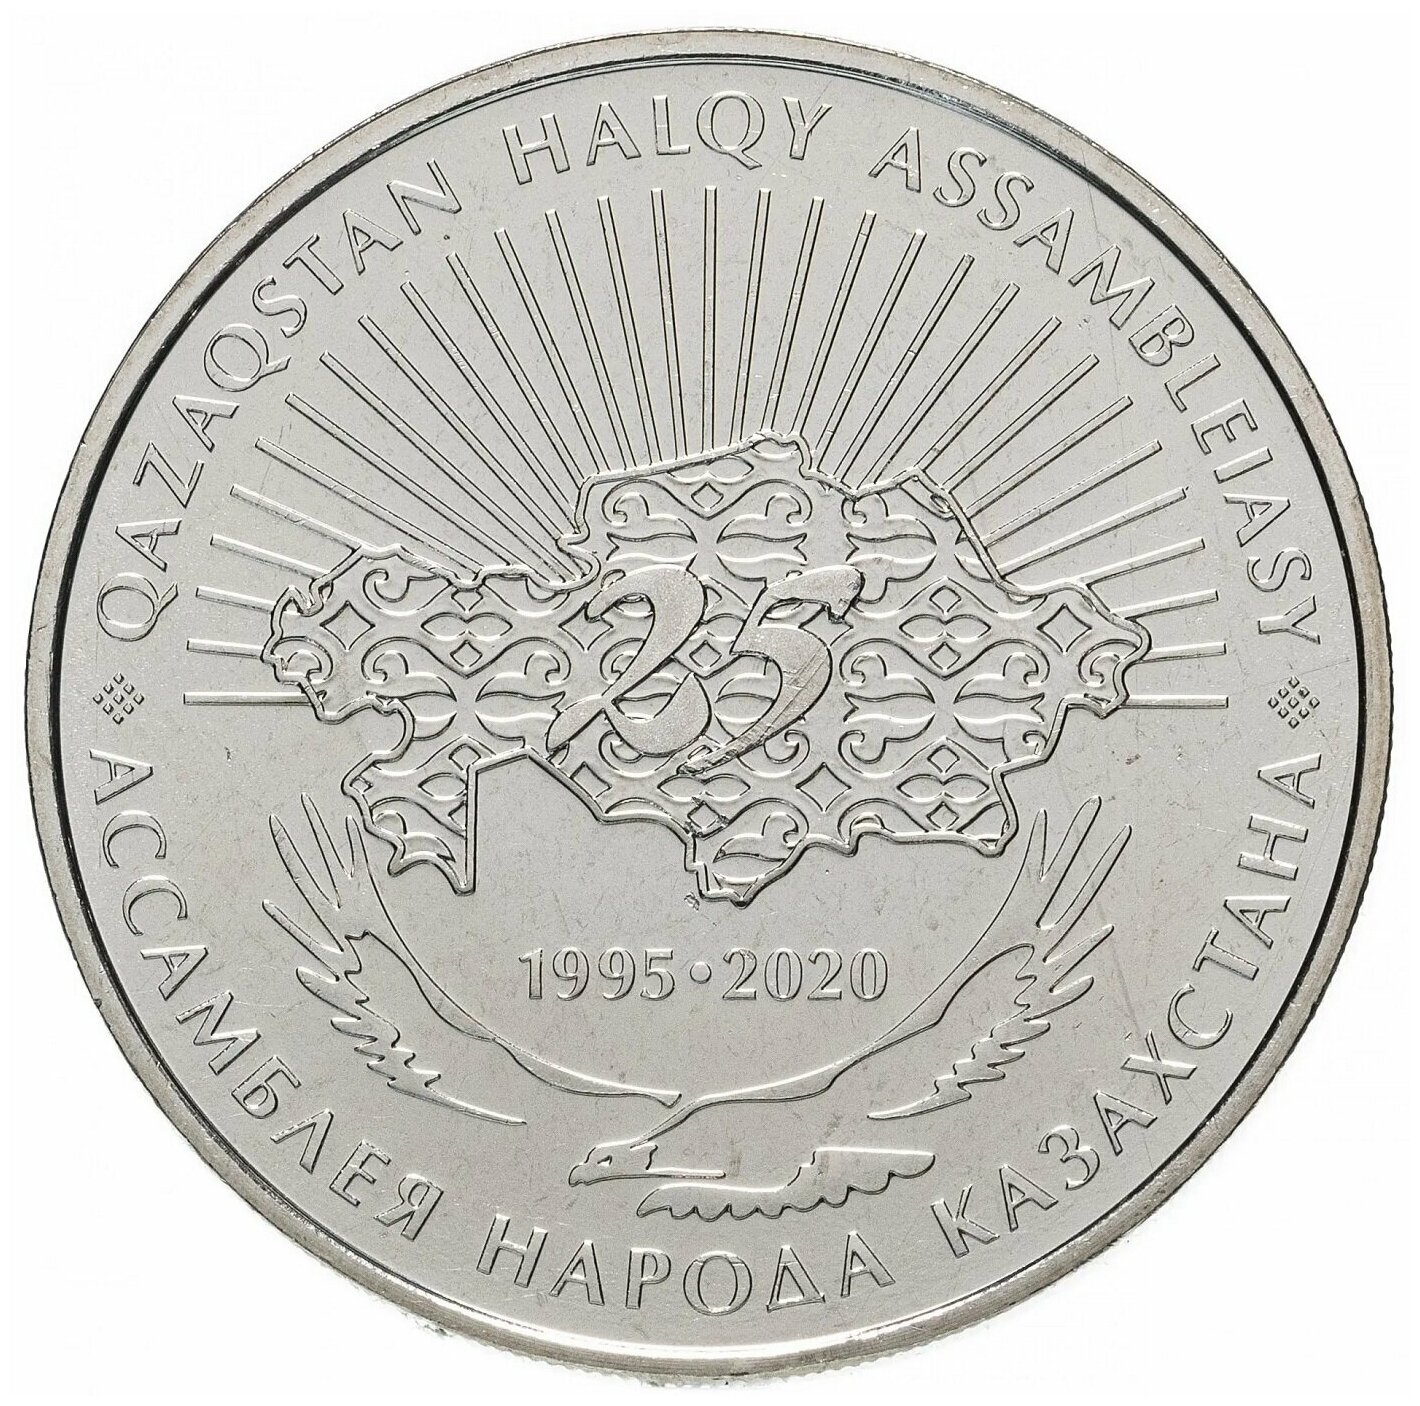 Памятная монета 100 тенге 25 лет Ассамблее народов Казахстана. Казахстан, 2020 г. в. Монета в состоянии UNC (из мешка)